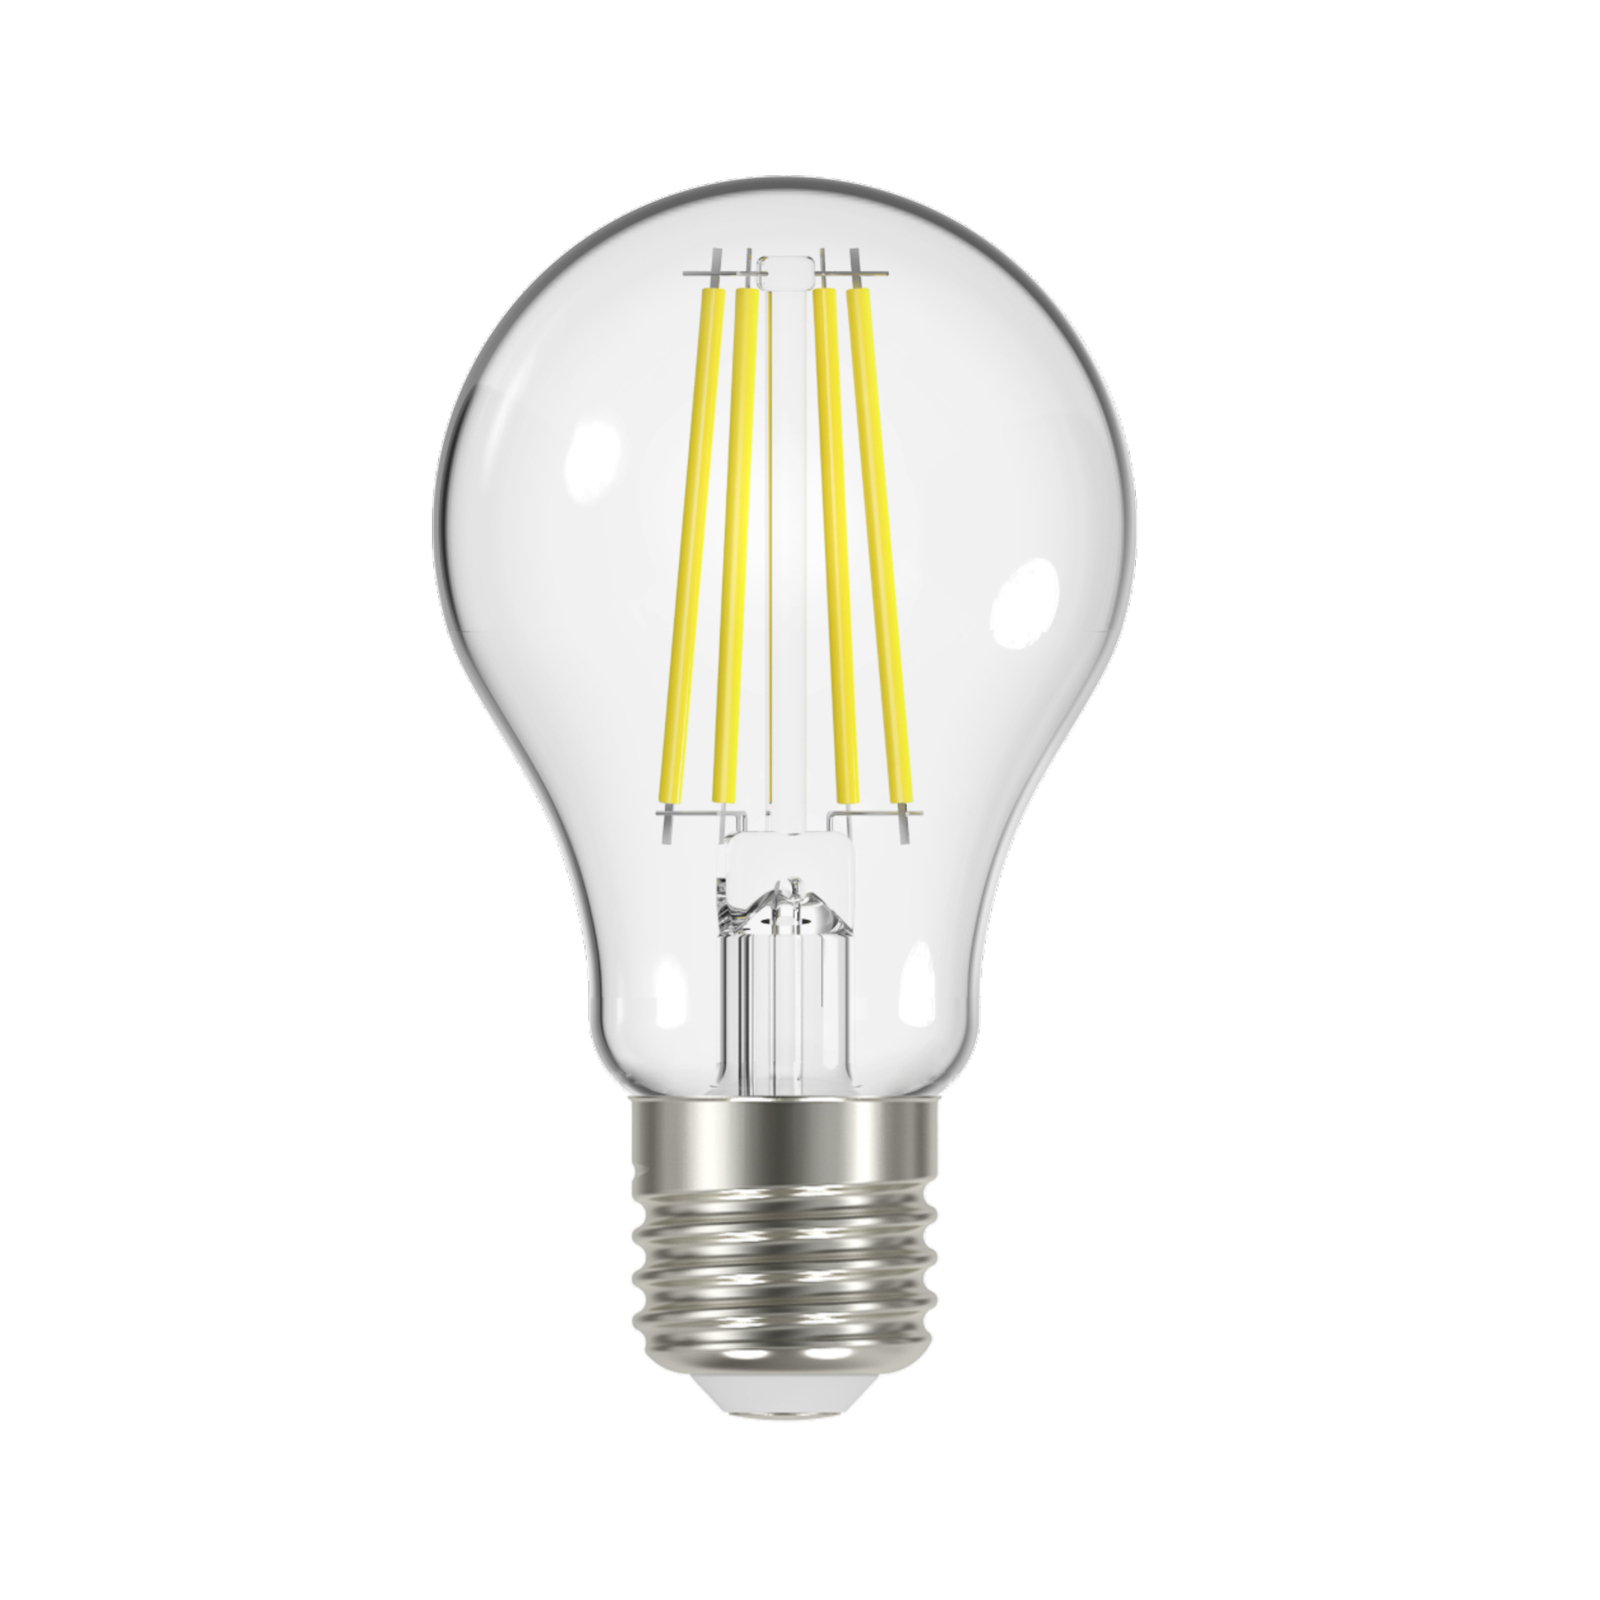 Aquarium Vechter Bij elkaar passen LED filament lamp E27 5W, 1060 Lumen, helder | Lampen24.nl